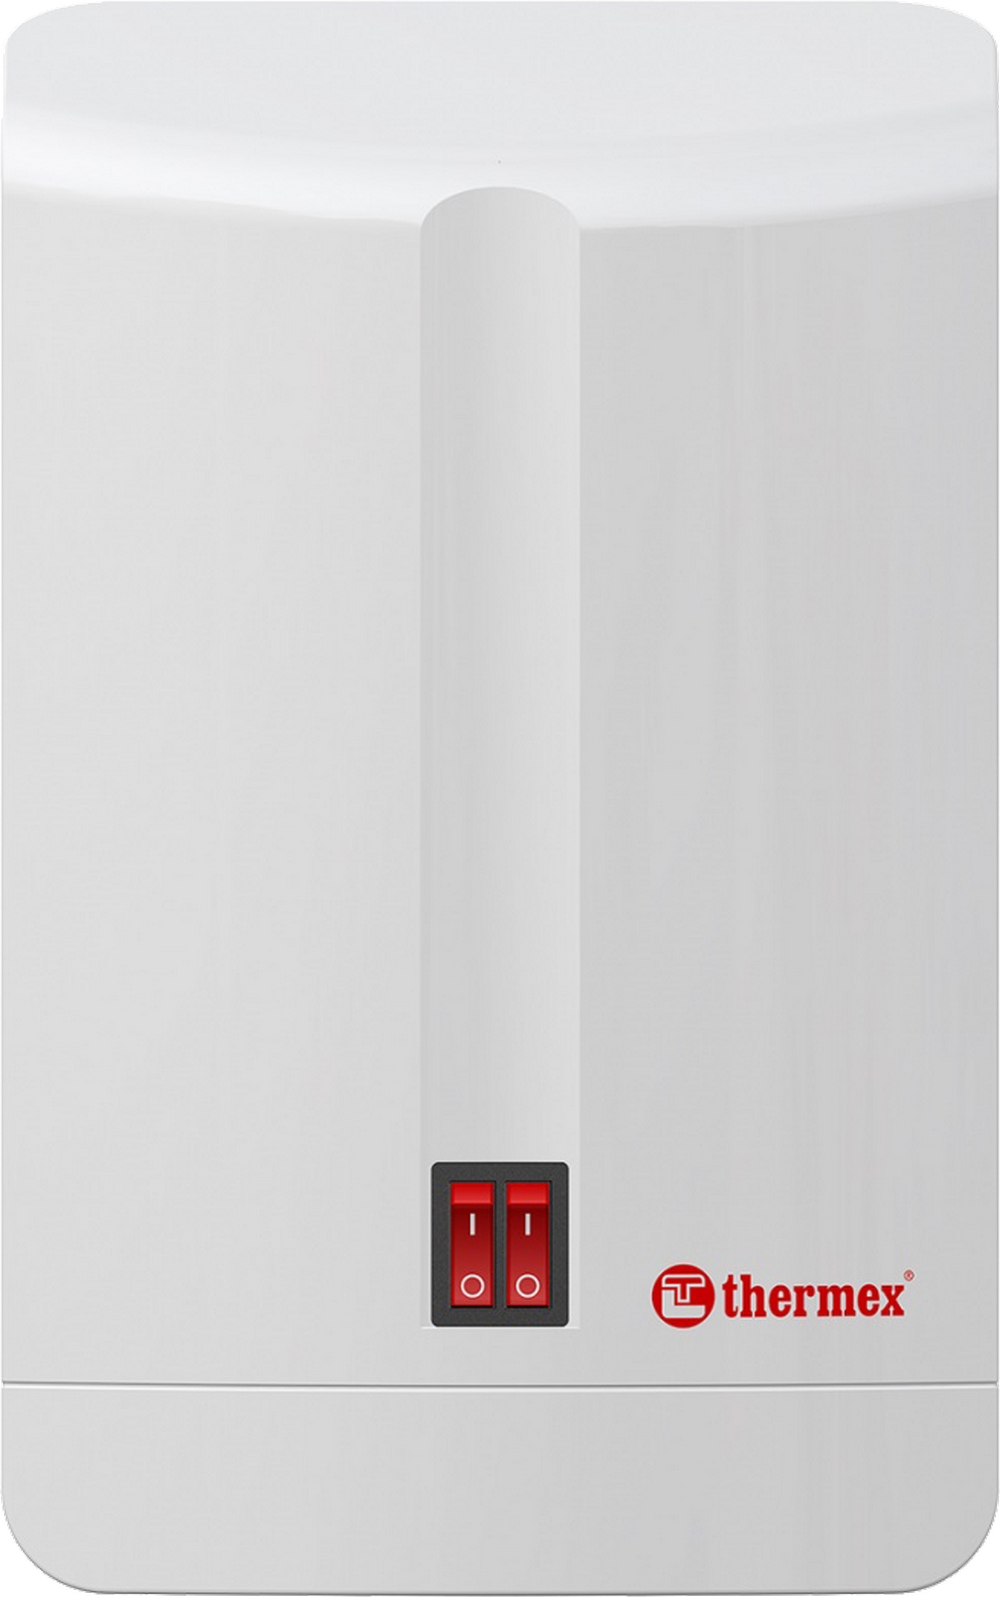 Проточный водонагреватель Thermex TIP 500 (combi) отзывы - изображения 5